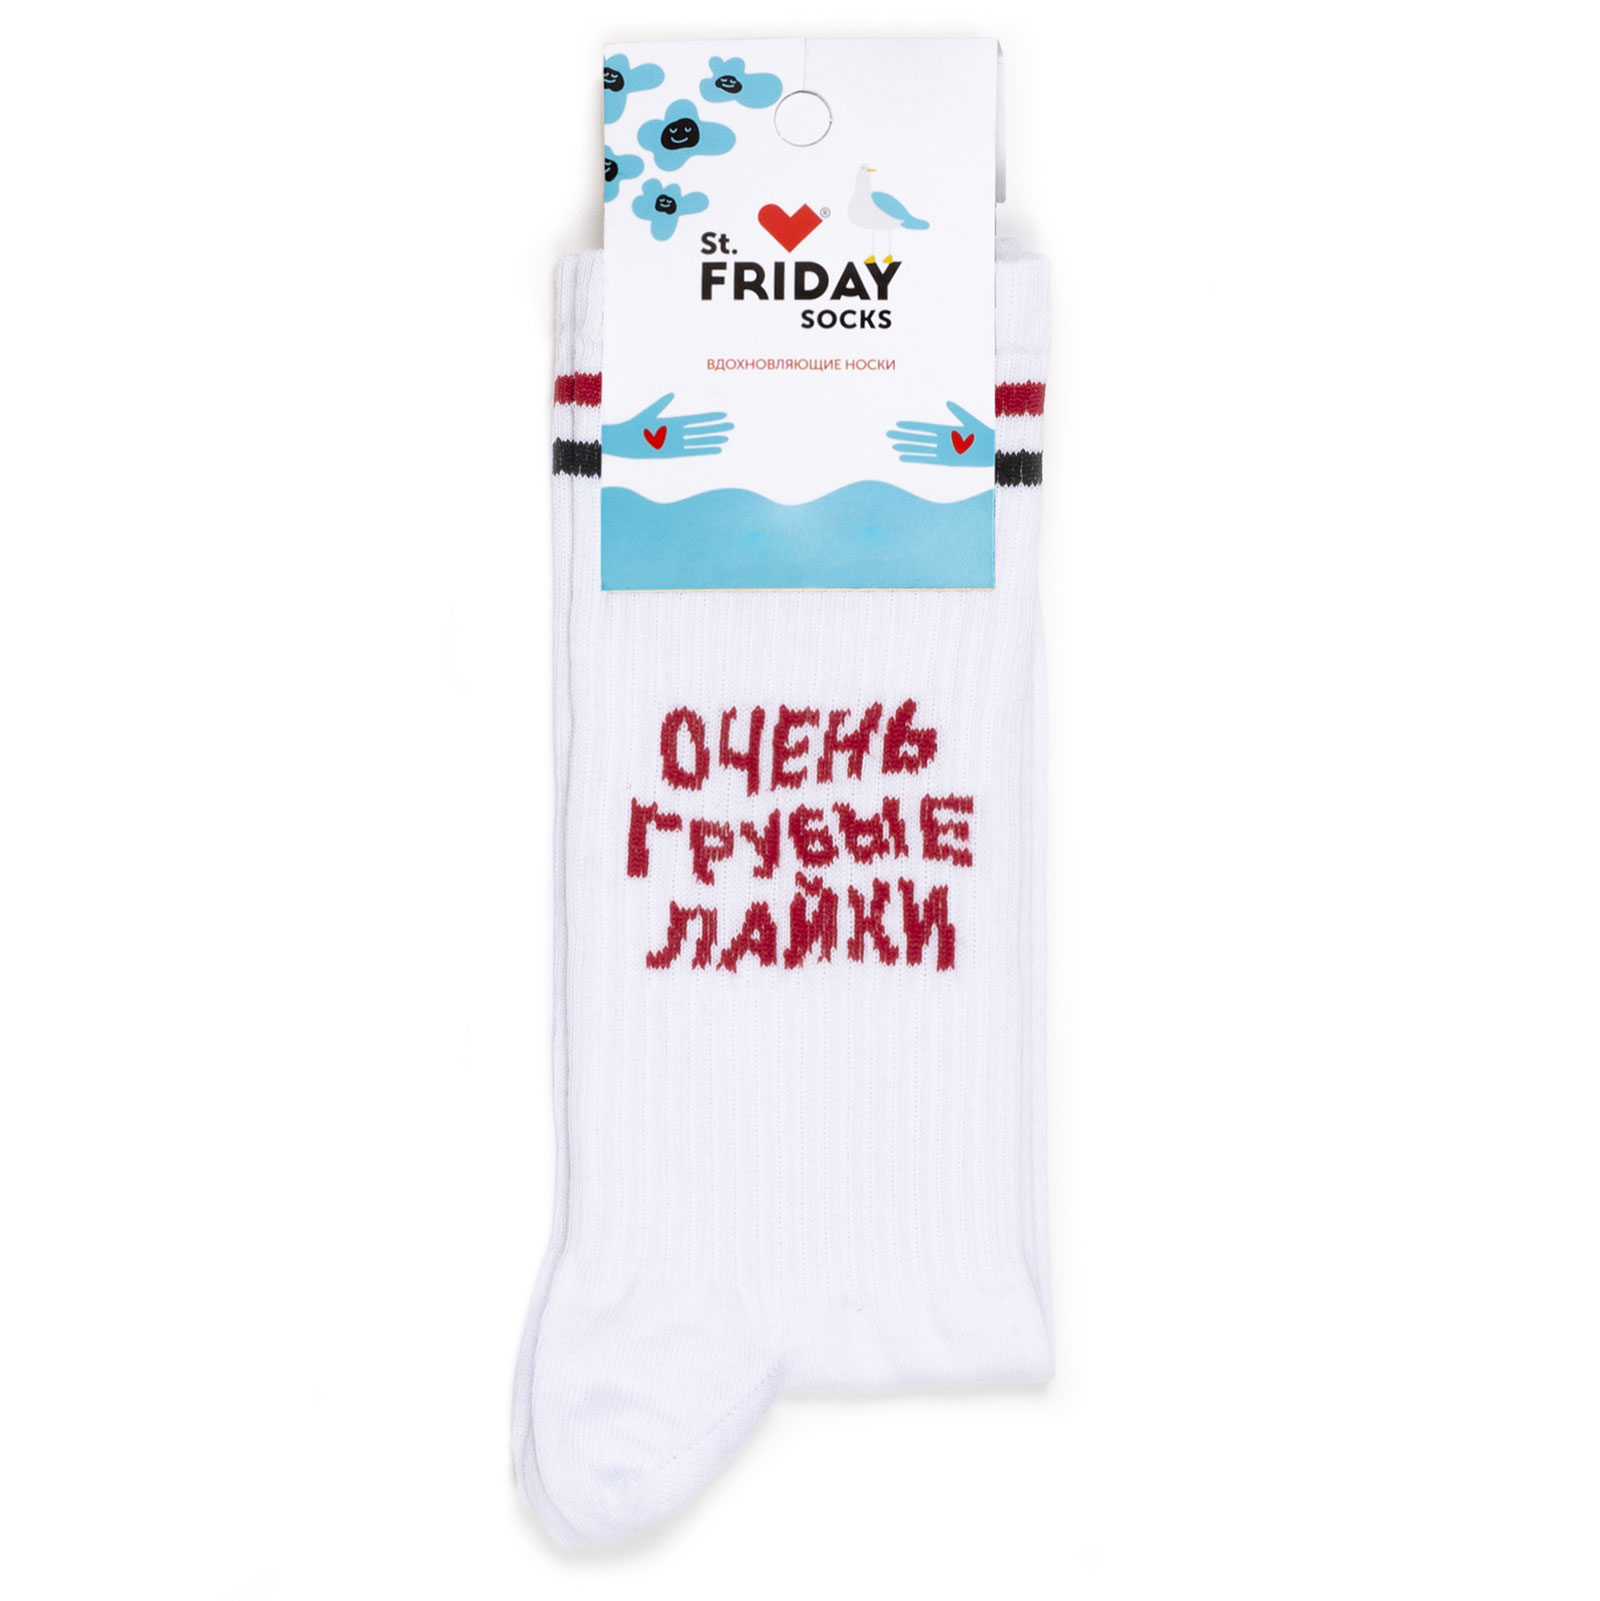 Унисекс носки St. Friday, белые грубые лайковые, размер 42-46.